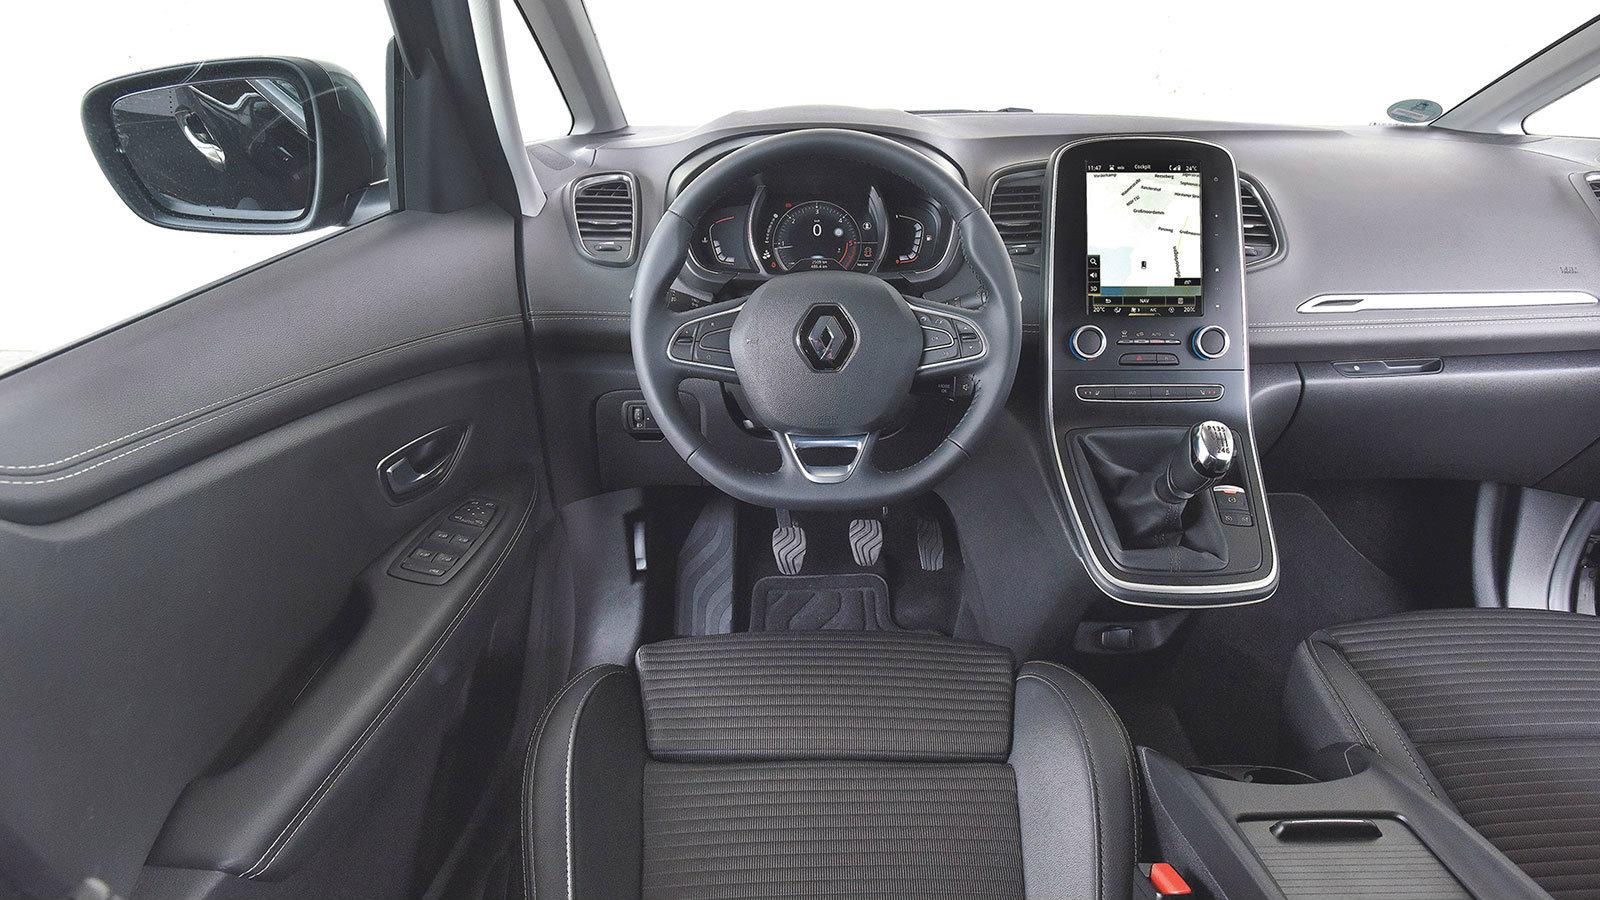 Ασυνήθιστο: H Renault προσφέρει το υβριδικό Scenic μόνο με χειροκίνητο κιβώτιο. Η οθόνη αφής χρειάζεται εξοικείωση. 